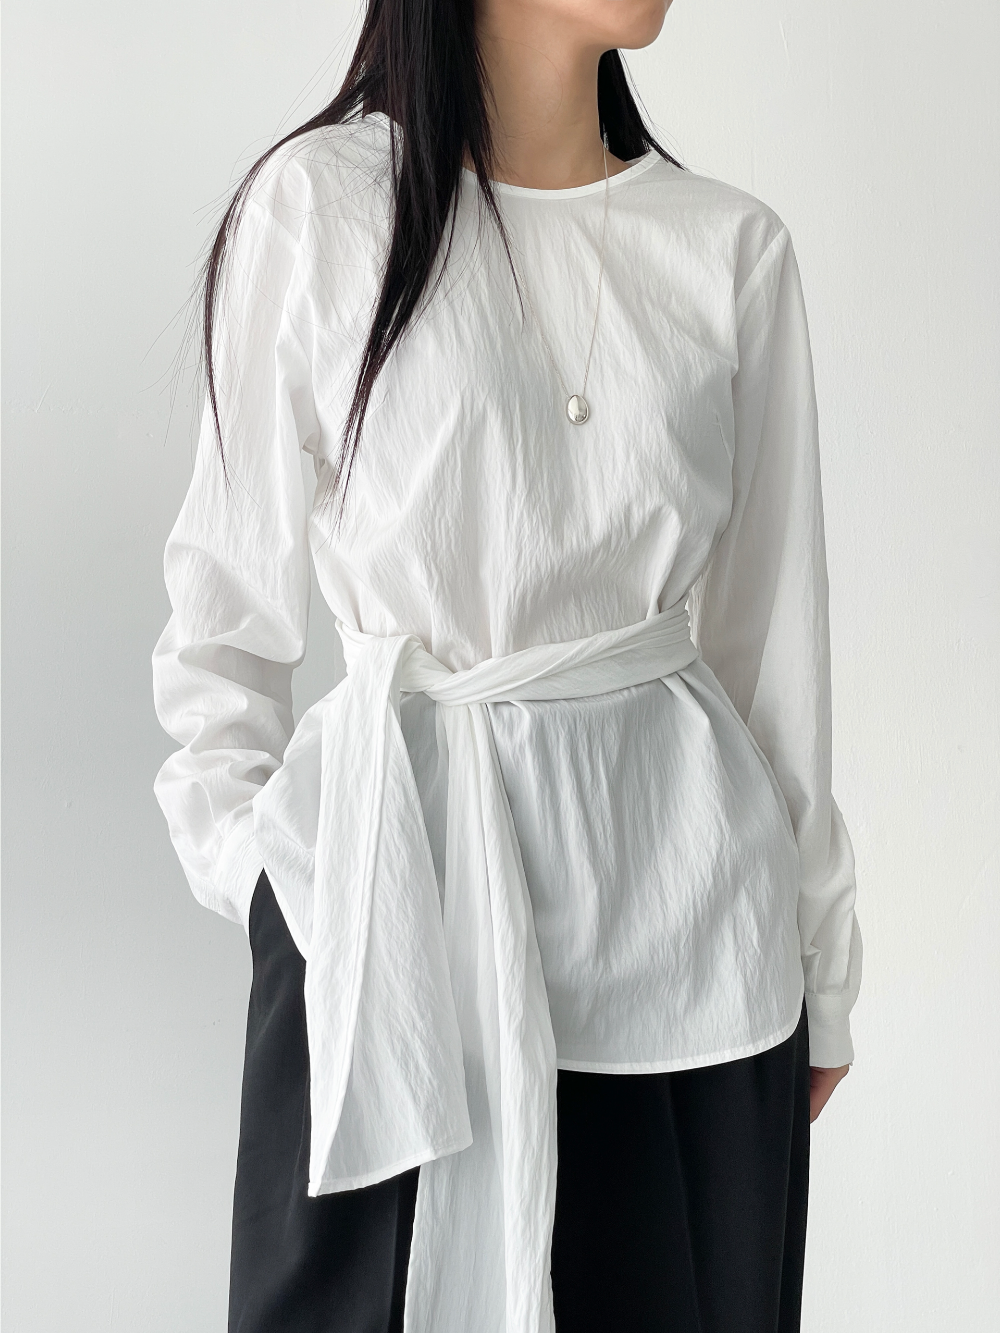 loop strap blouse (3cloor)